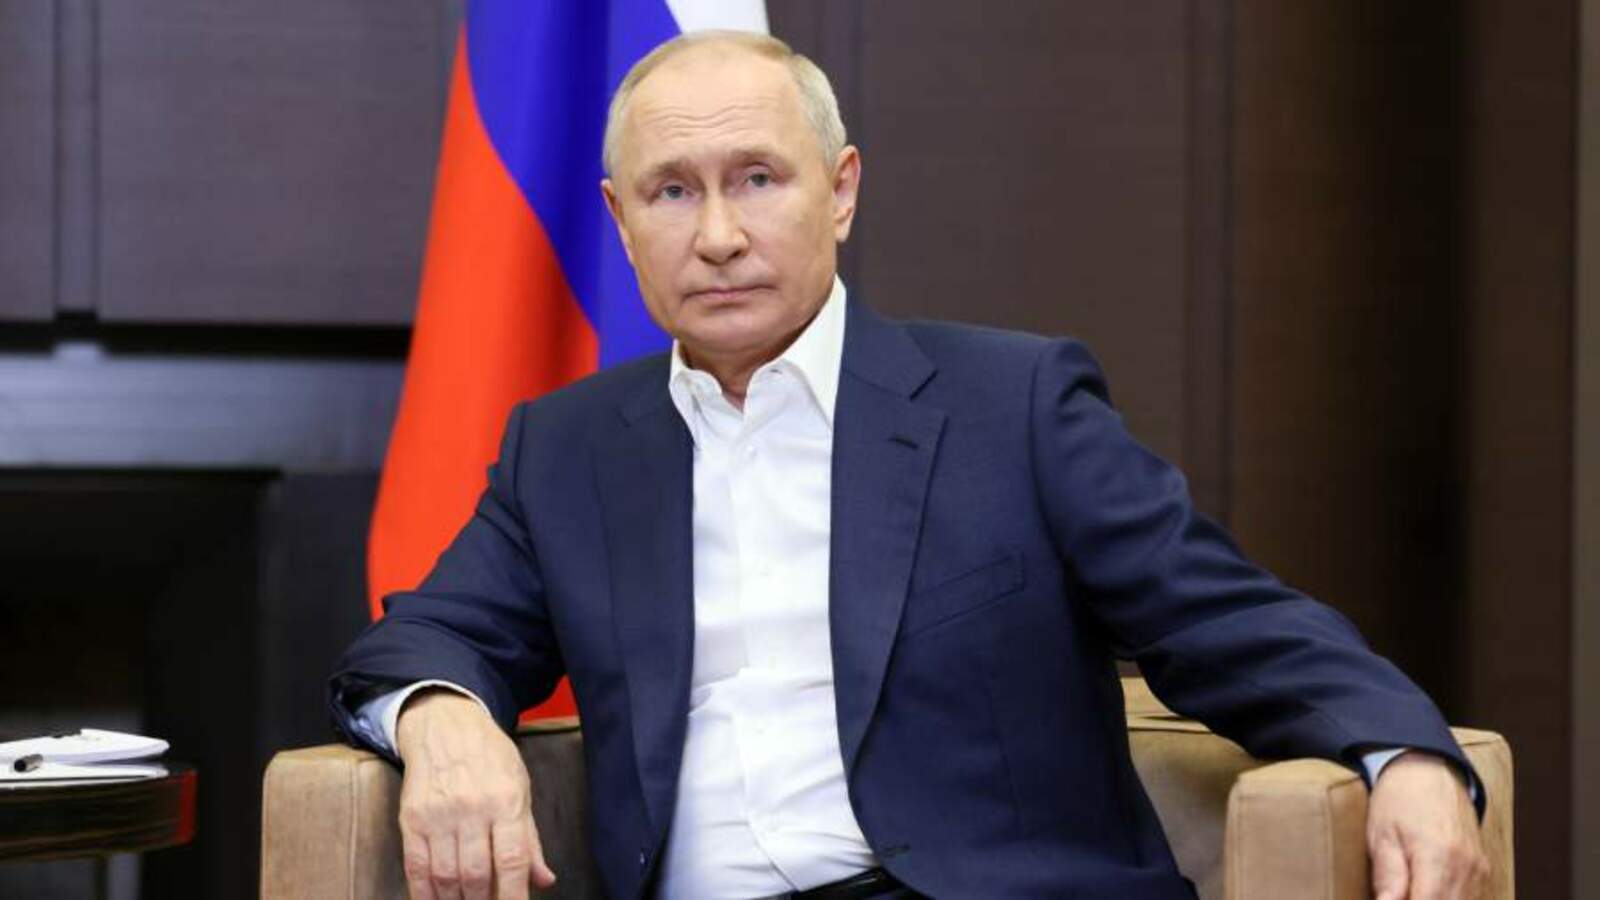 Путин Раҫҫей экономикинче вӑрман комплексӗн пӗлтерӗшлӗ вырӑнне палăртнă